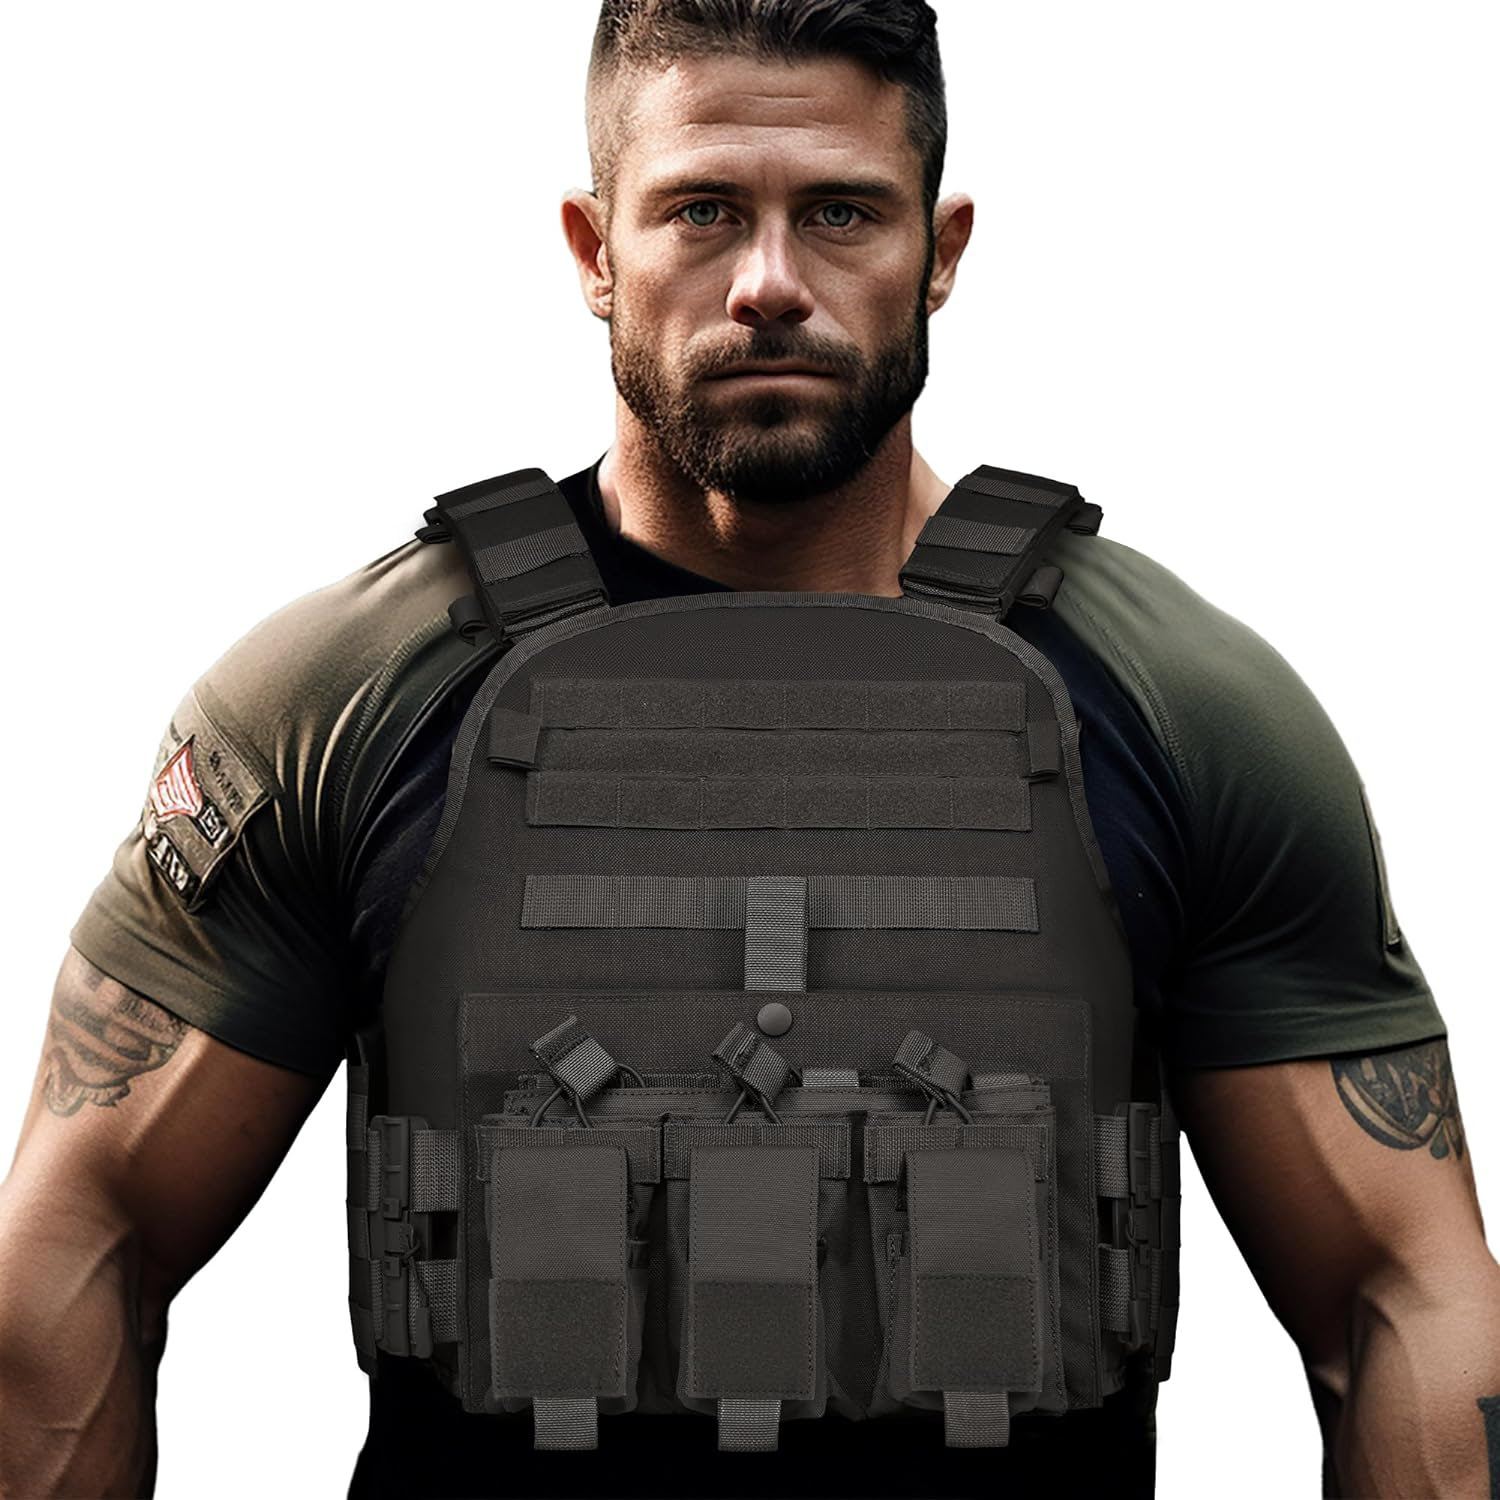 GFIRE Tactical Vest. 200 units. 